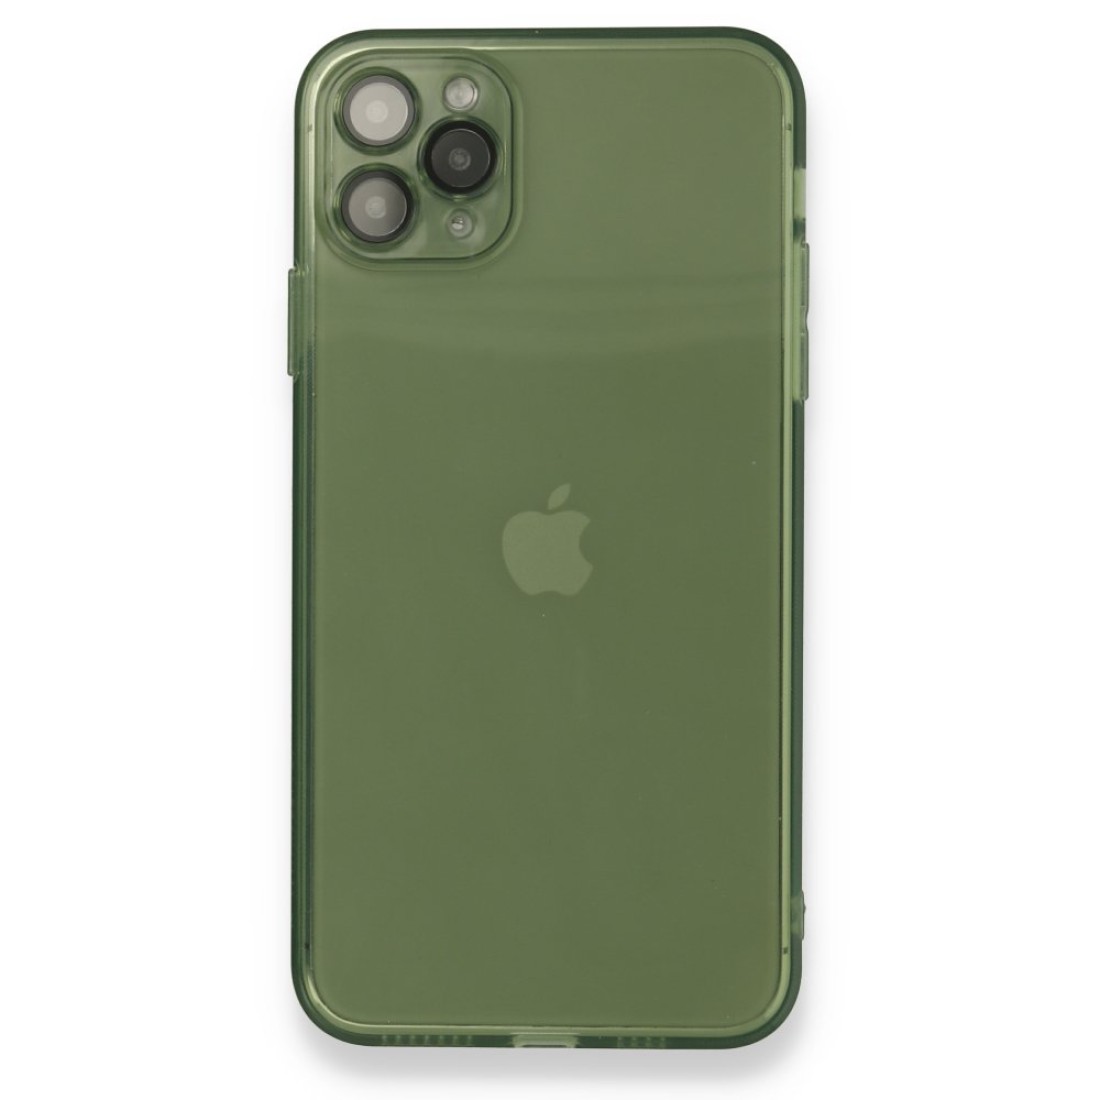 Apple iPhone 11 Pro Kılıf Fly Lens Silikon - Yeşil